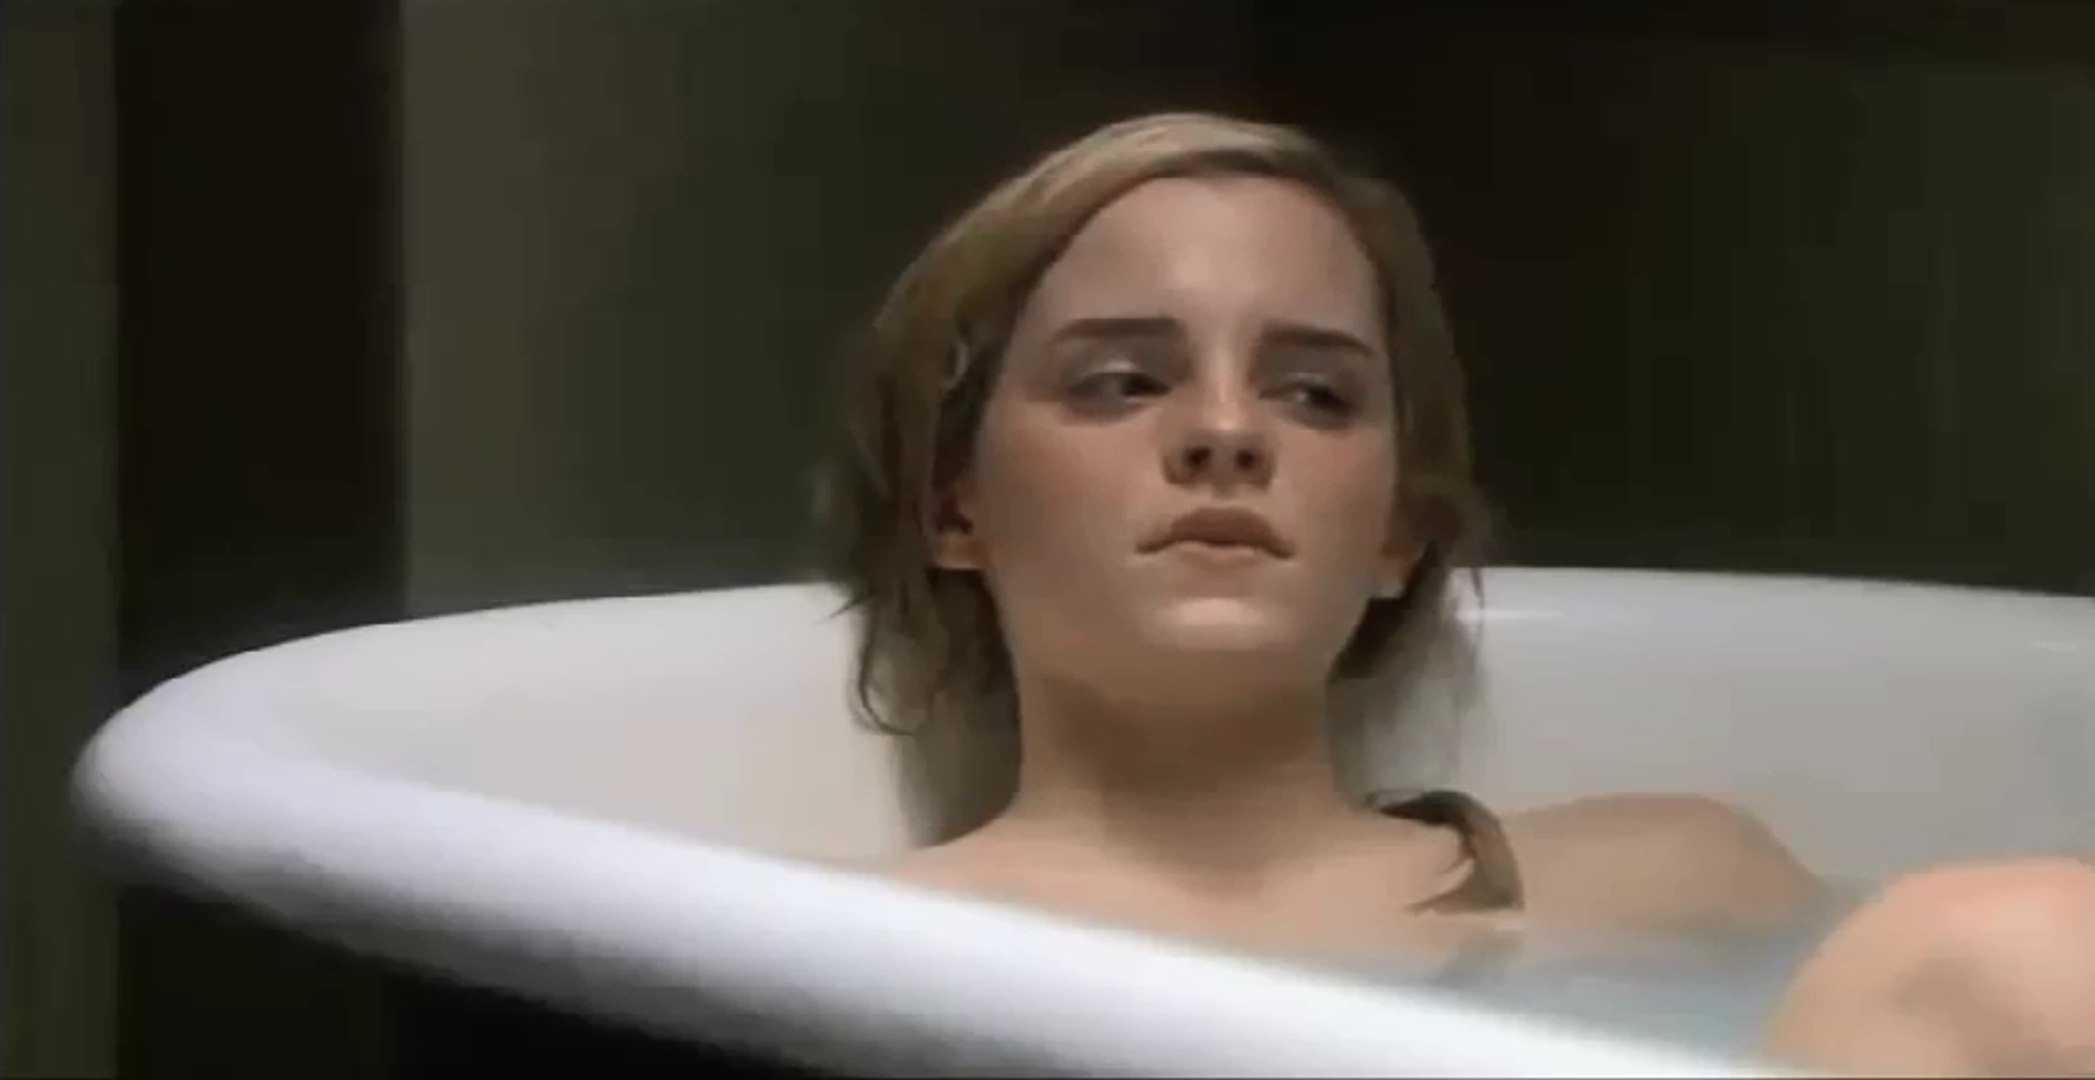 Emma watson nude bath